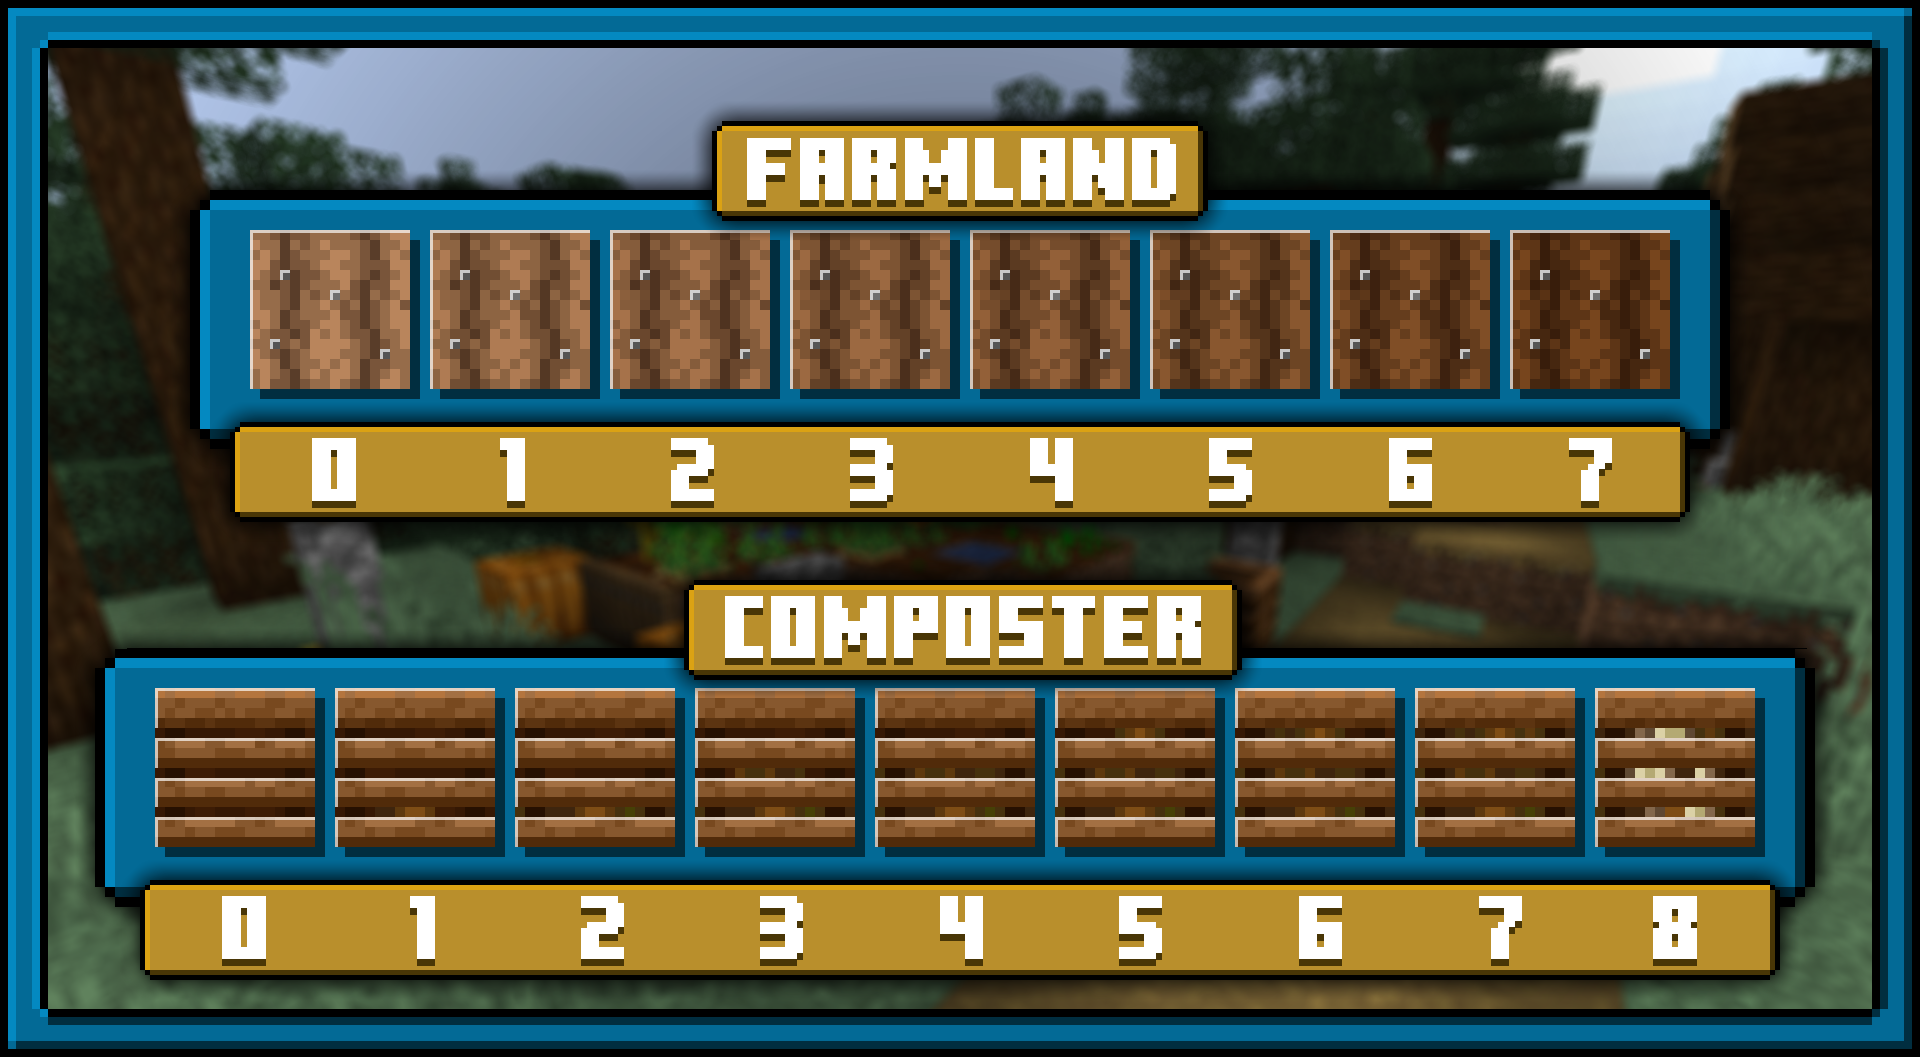 Composter + Farmland